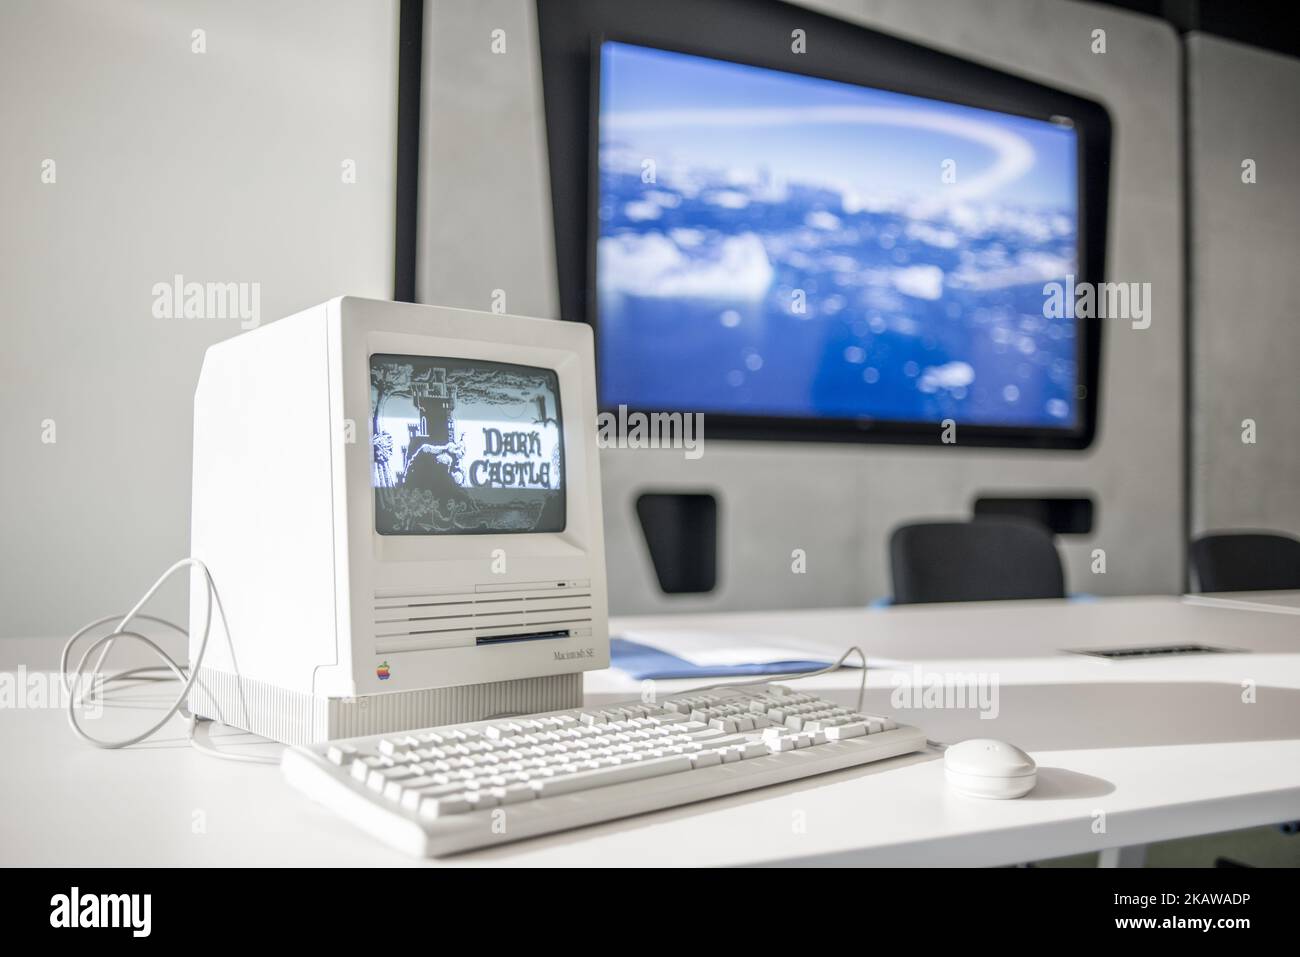 Macintosh se FDHD, data di uscita 1989 agosto, esposto al MacPaw's Ukrainian Apple Museum di Kiev, Ucraina il 26 gennaio 2017. Lo sviluppatore ucraino MacPaw ha aperto il museo dell'hardware Apple presso l'ufficio della società a Kiev. La collezione ha più di 70 modelli Macintosh originali datati dal 1981 al 2017. (Foto di Oleksandr Rupeta/NurPhoto) Foto Stock